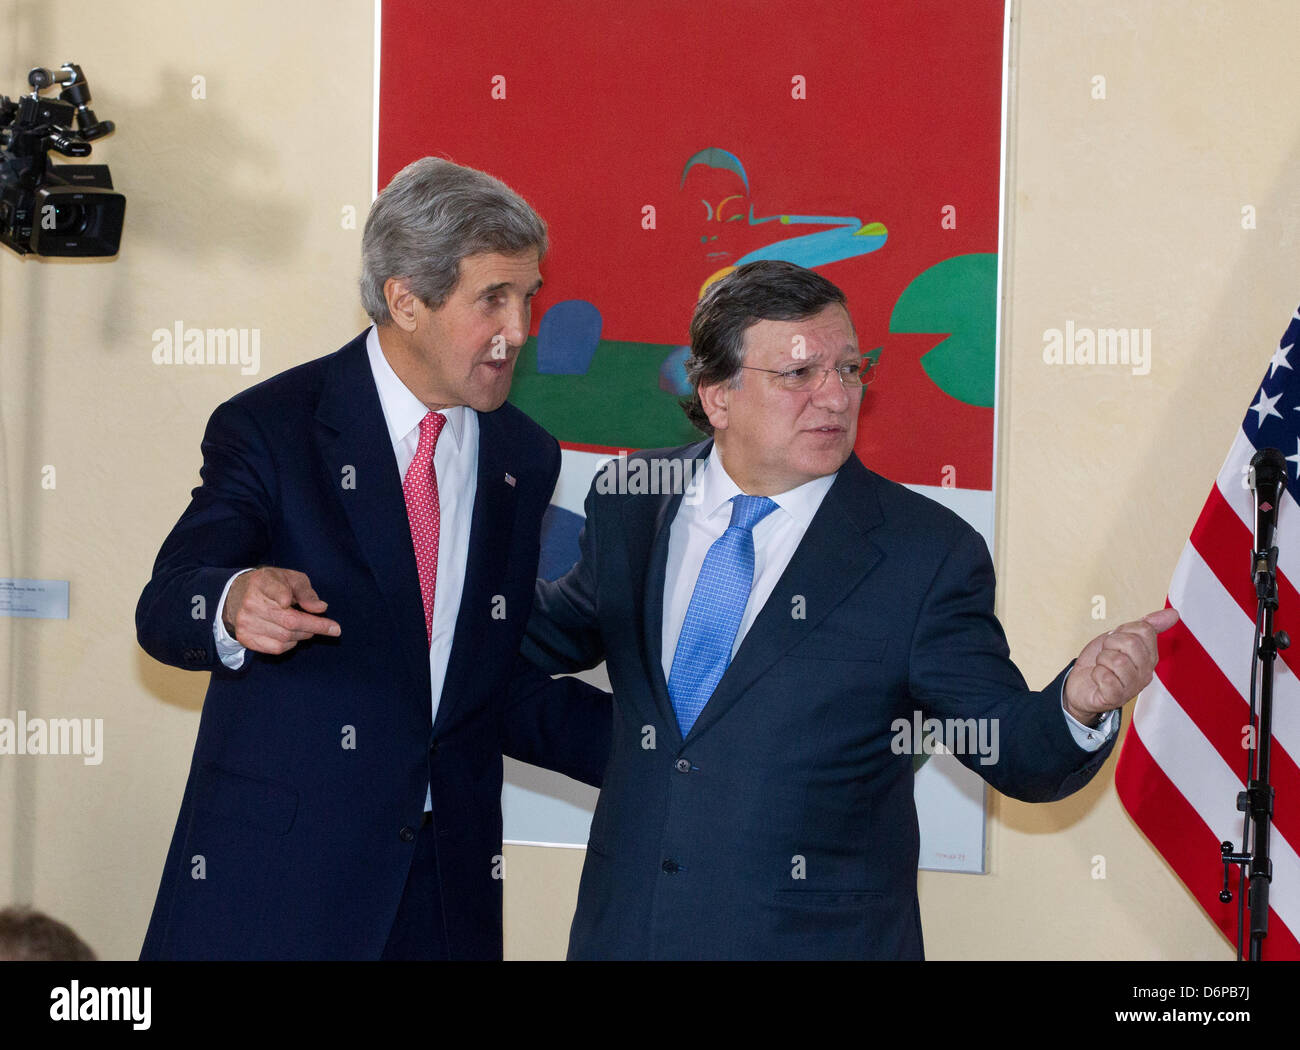 Brüssel, Belgien. 22. April 2013. Herr John Kerry, United States Secretary Of State mit dem Präsidenten der Europäischen Kommission José Manuel Barroso während seines Besuchs in Institutionen der Europäischen Union. Stockfoto